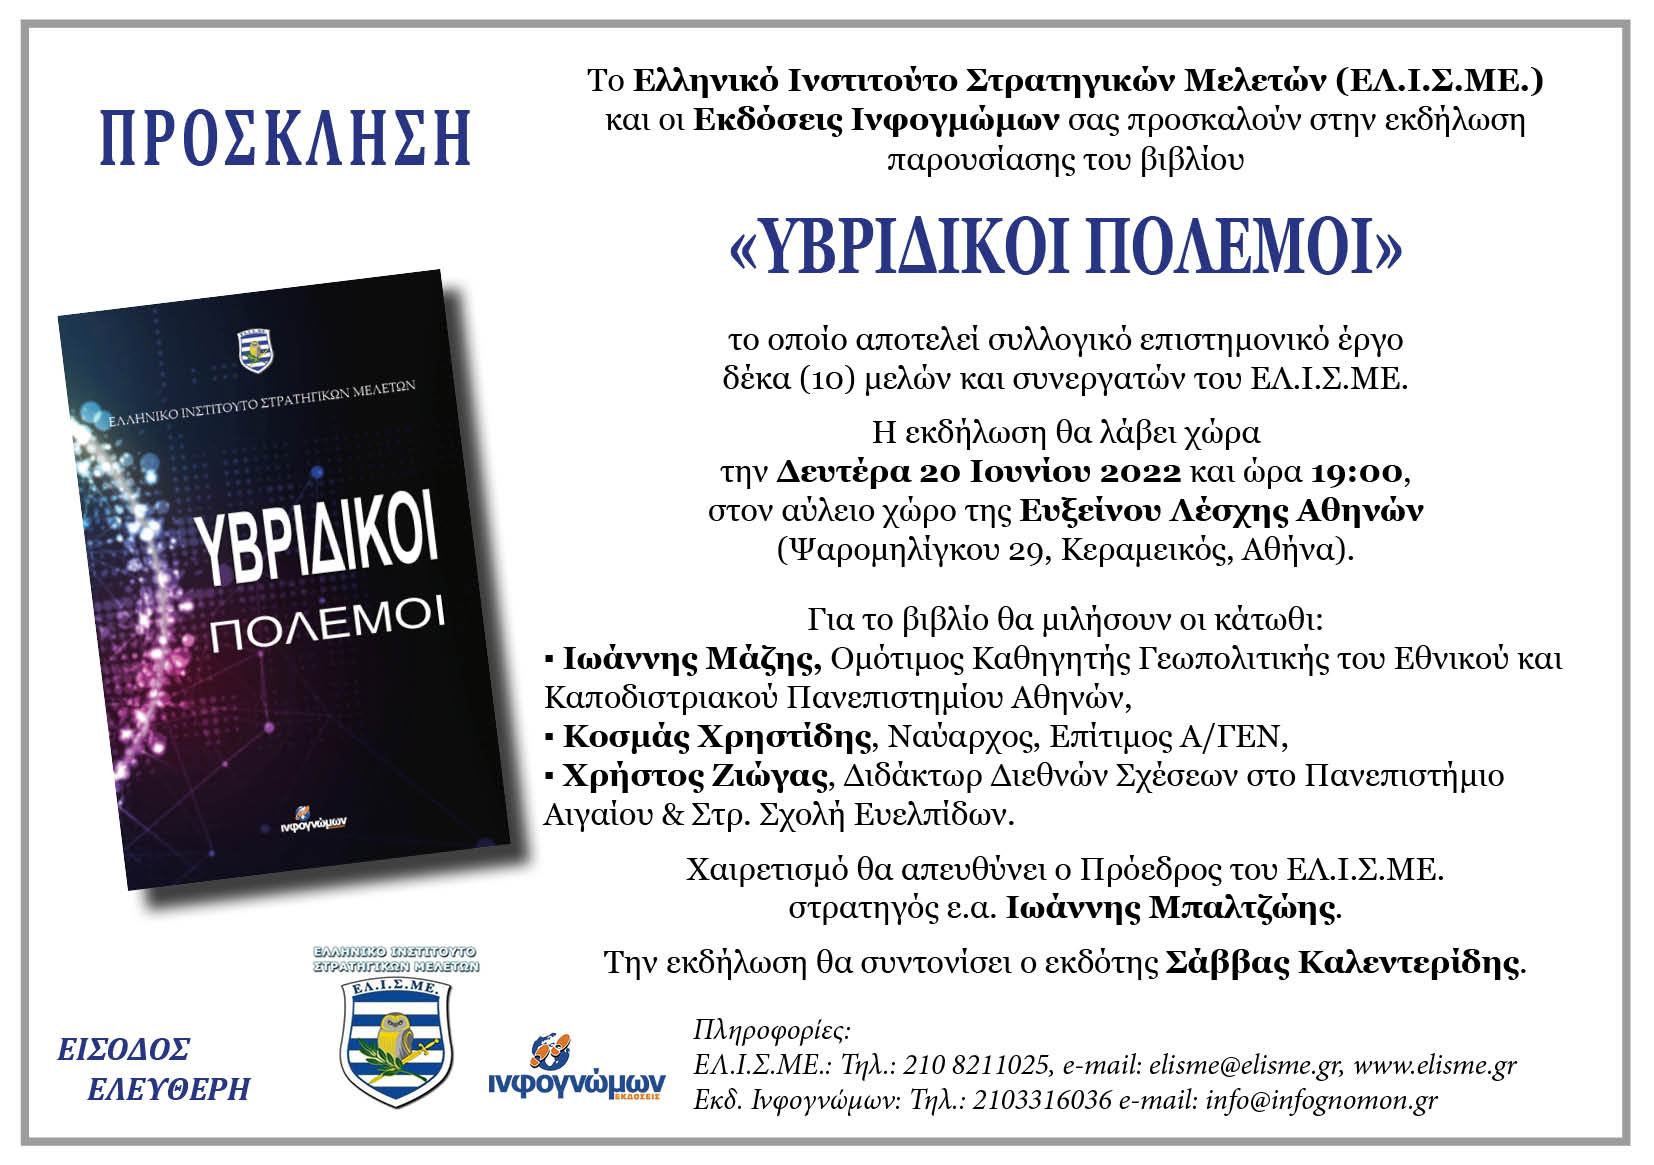 Παρουσίαση του βιβλίου “Υβριδικοί Πόλεμοι” τη Δευτέρα, 20 Ιουνίου 2022 και ώρα 19:00 στην Αθήνα